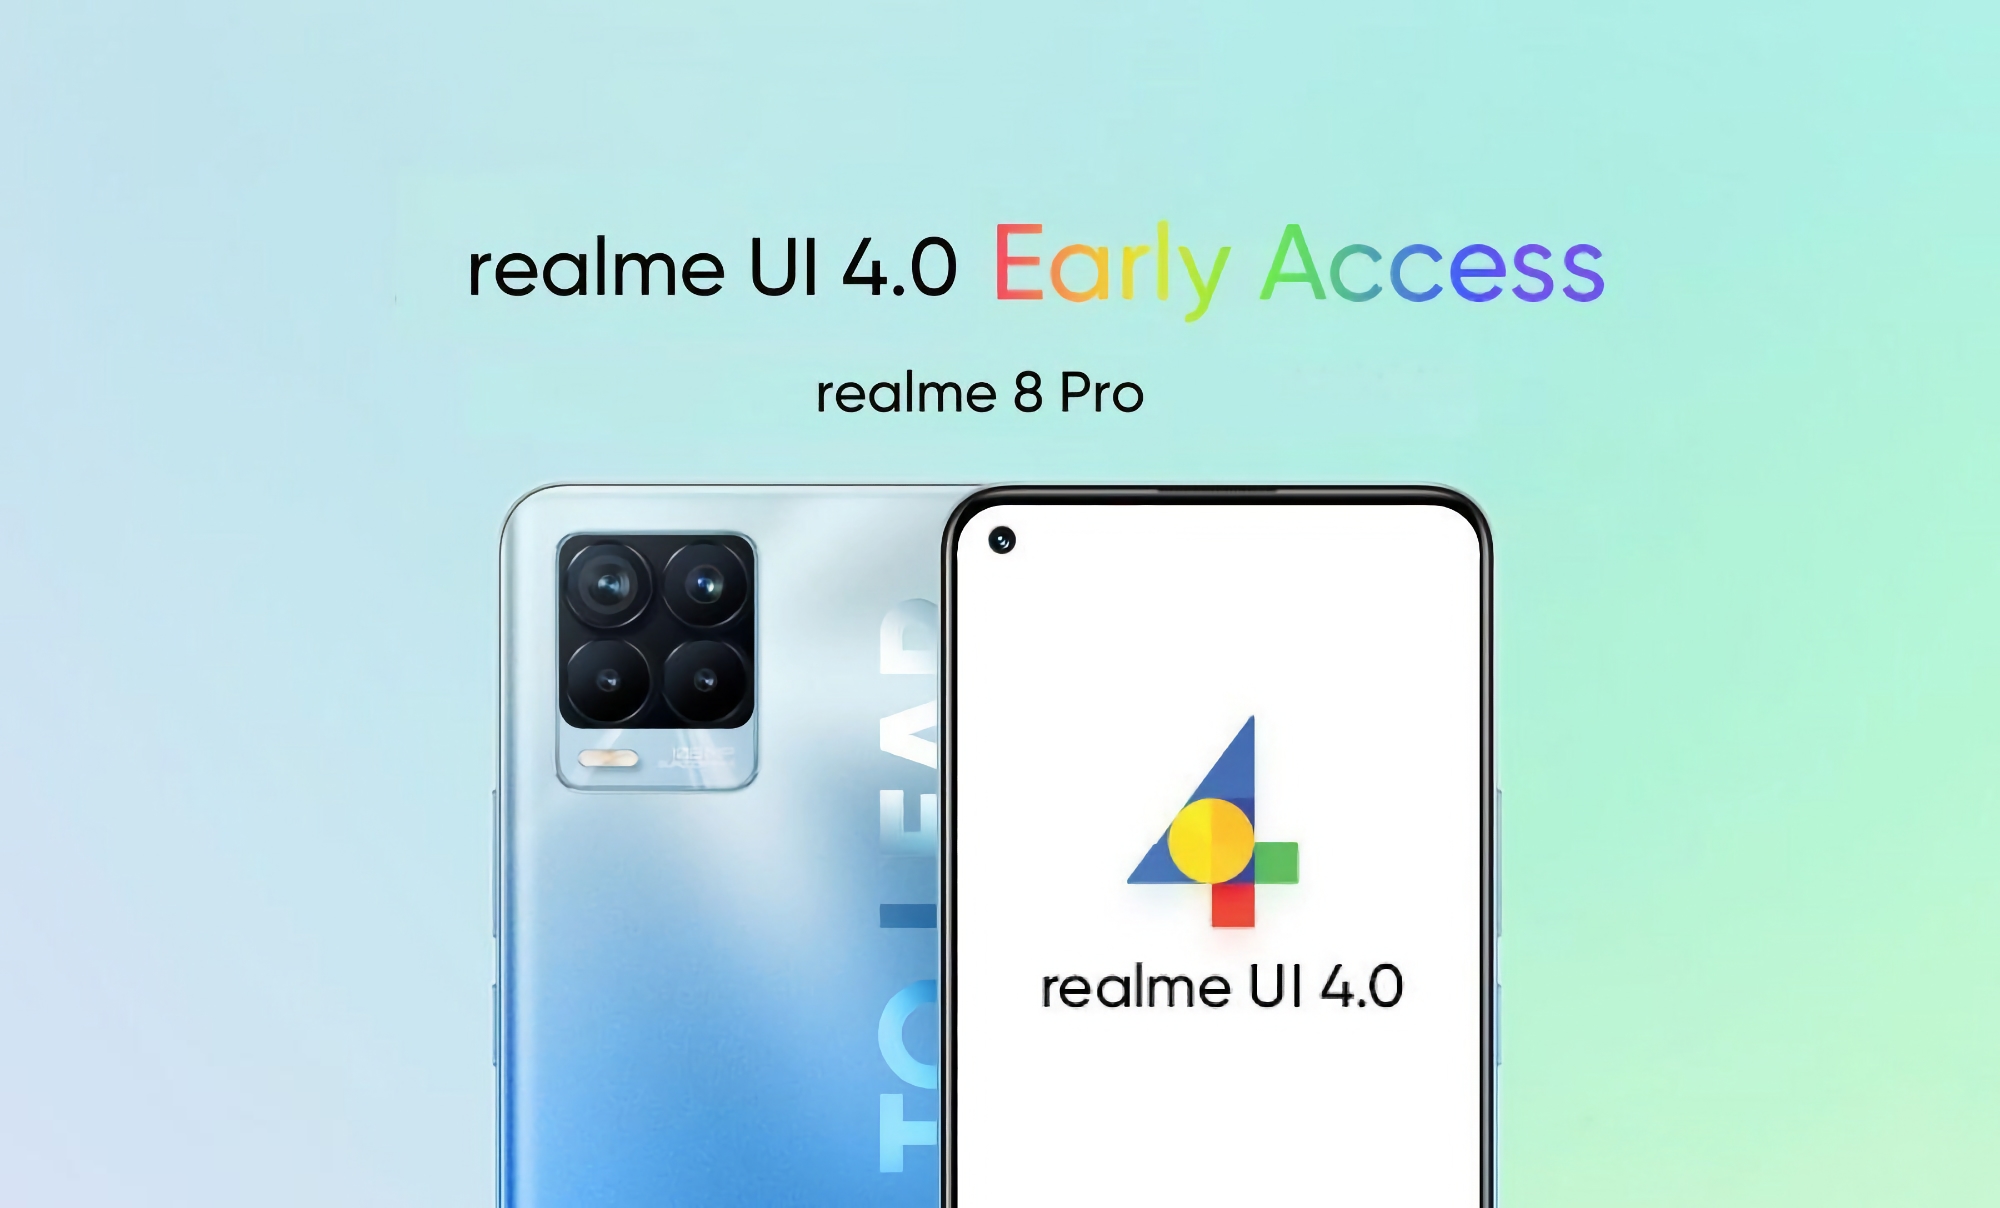 realme 8 Pro recibe una versión beta de Android 13 con realme UI 4.0